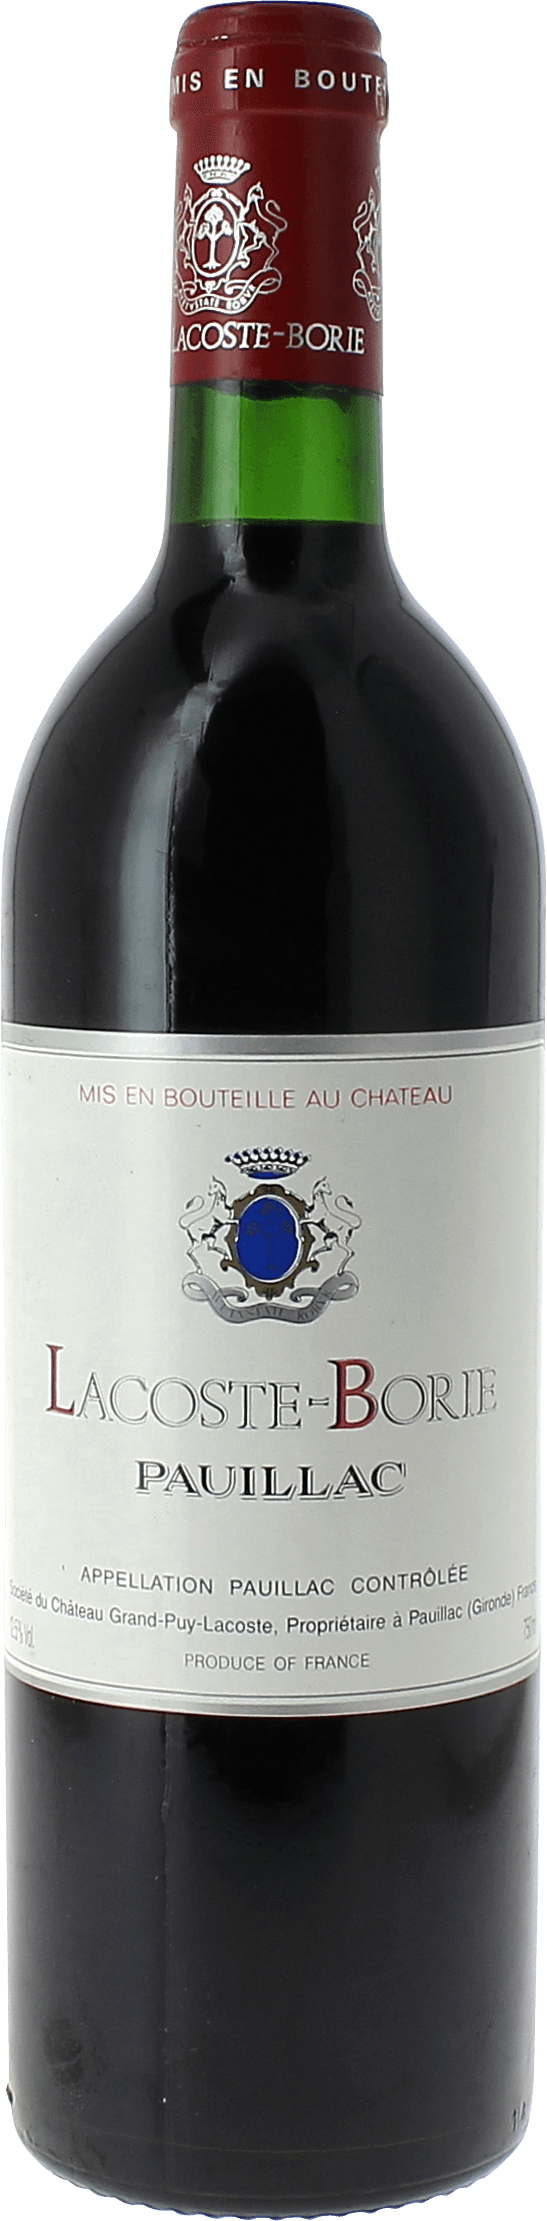 Lacoste borie 2018 5 me Grand cru class Pauillac, Bordeaux rouge